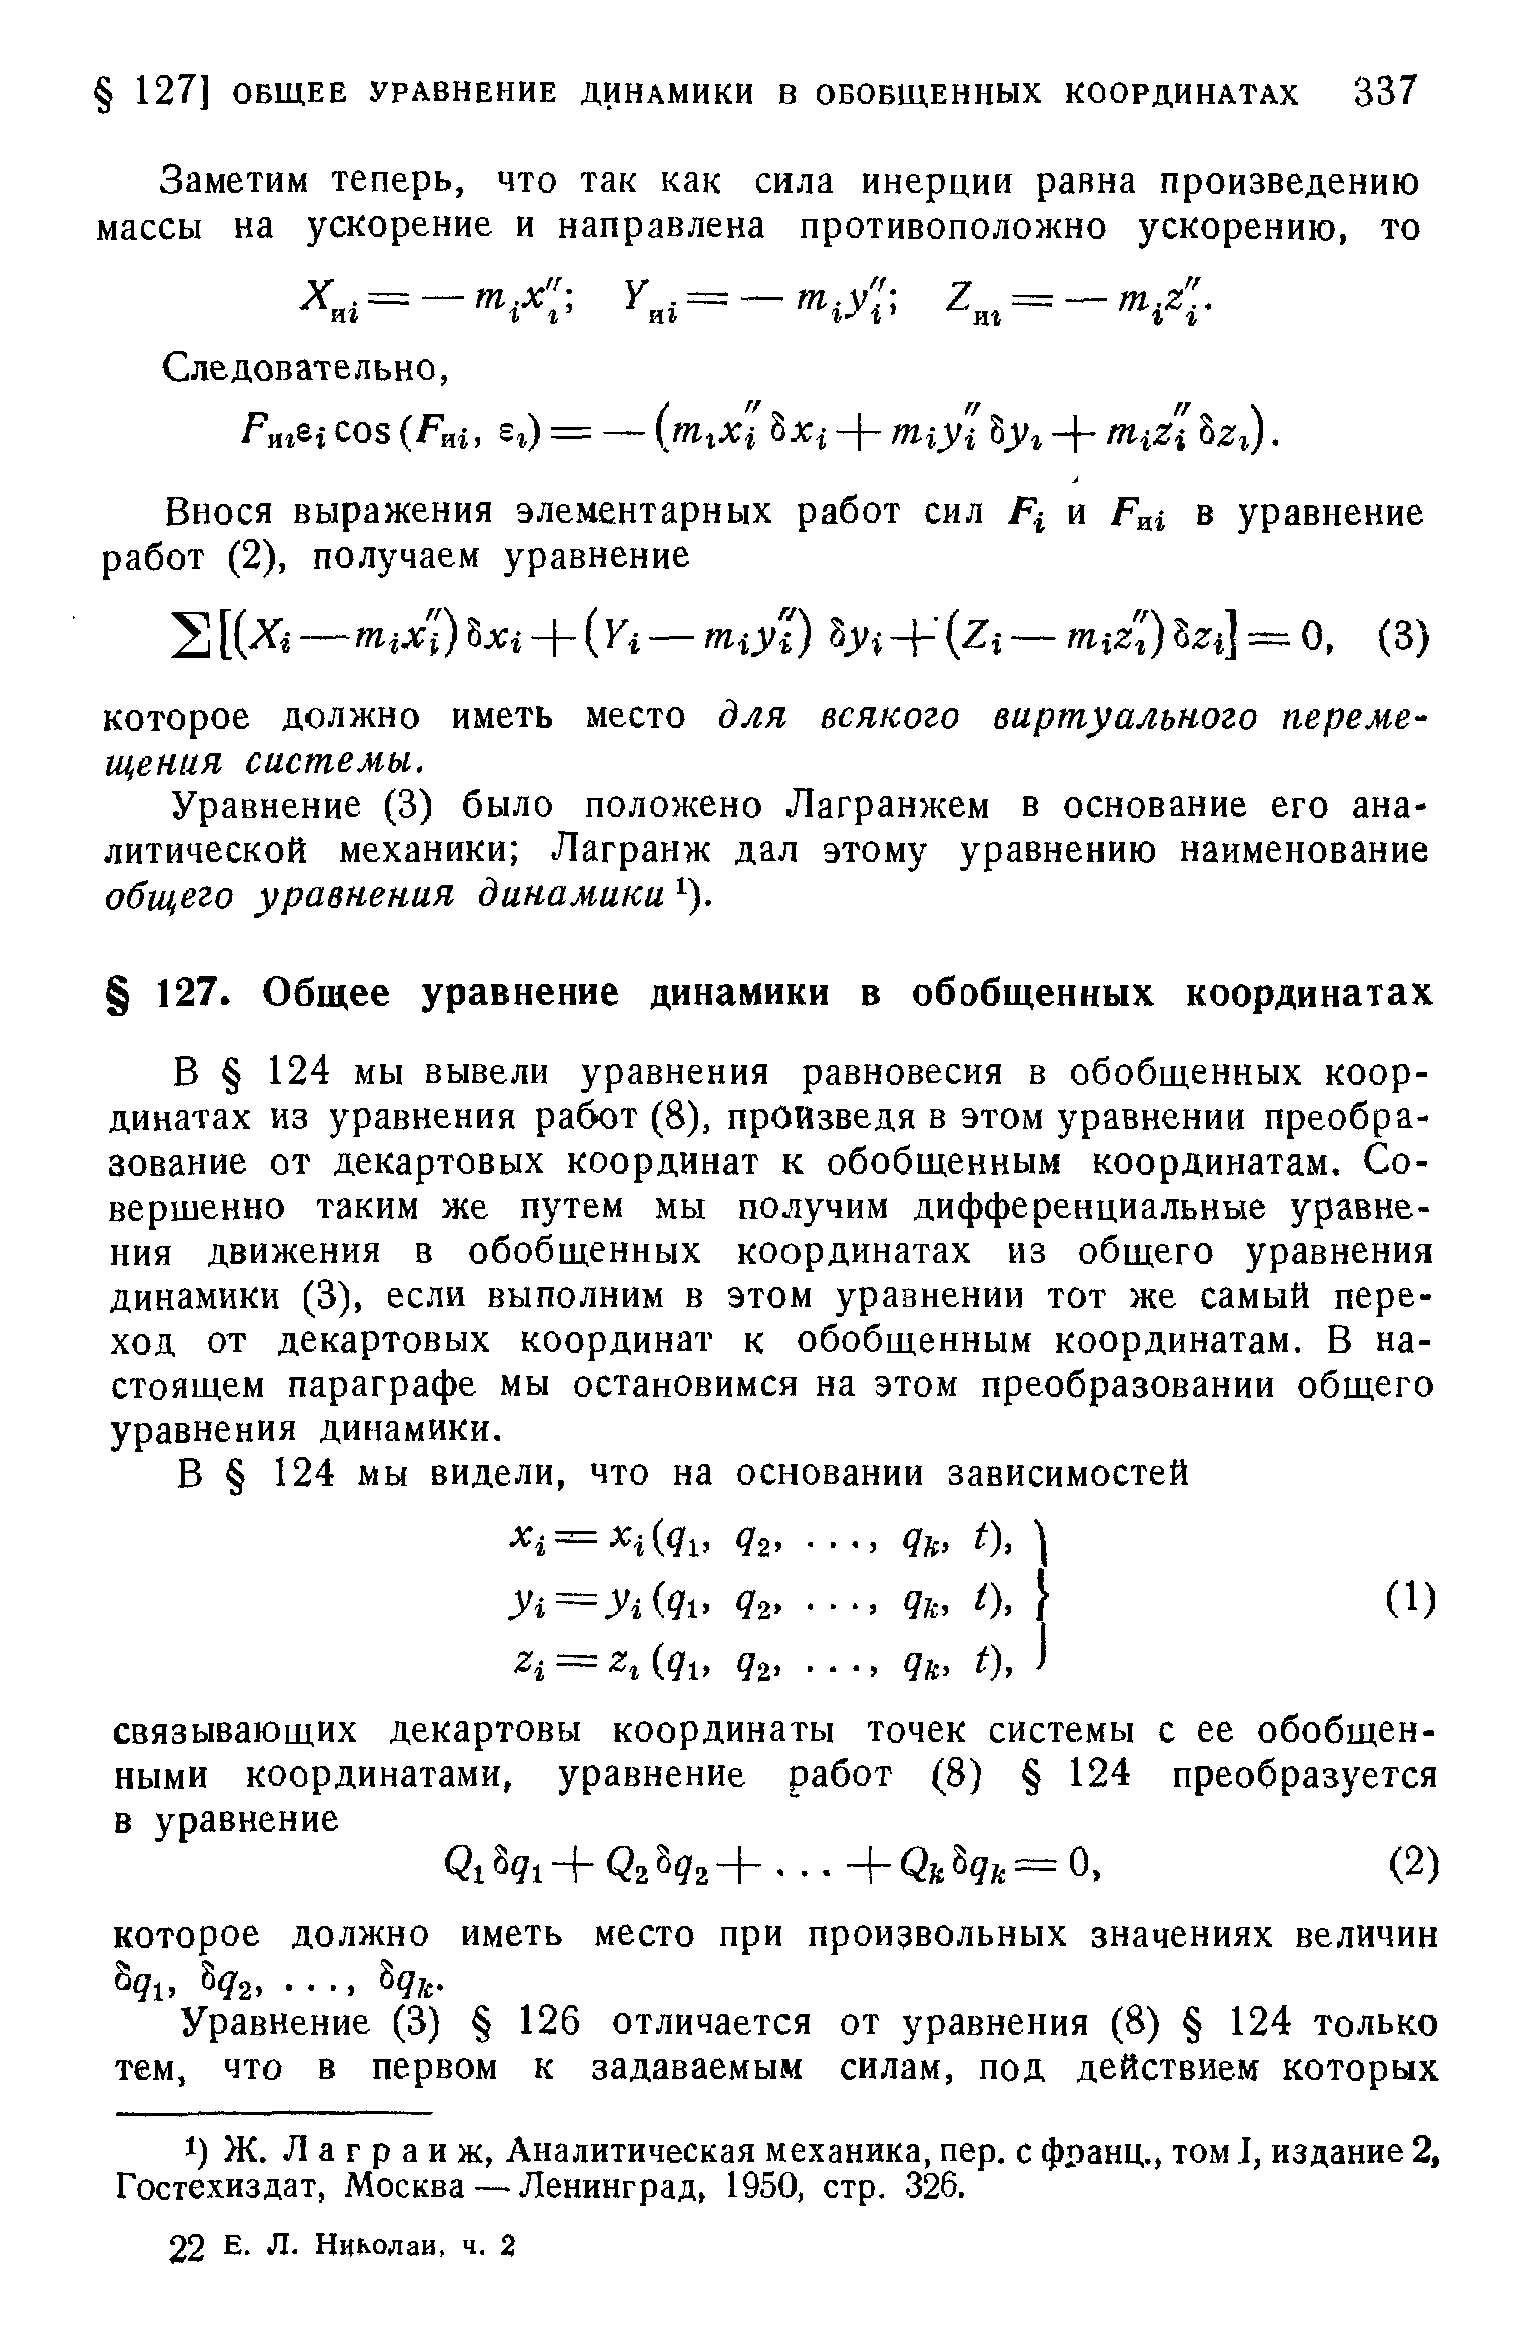 Уравнение (3) было положено Лагранжем в основание его аналитической механики Лагранж дал этому уравнению наименование общего уравнения динамики ).
